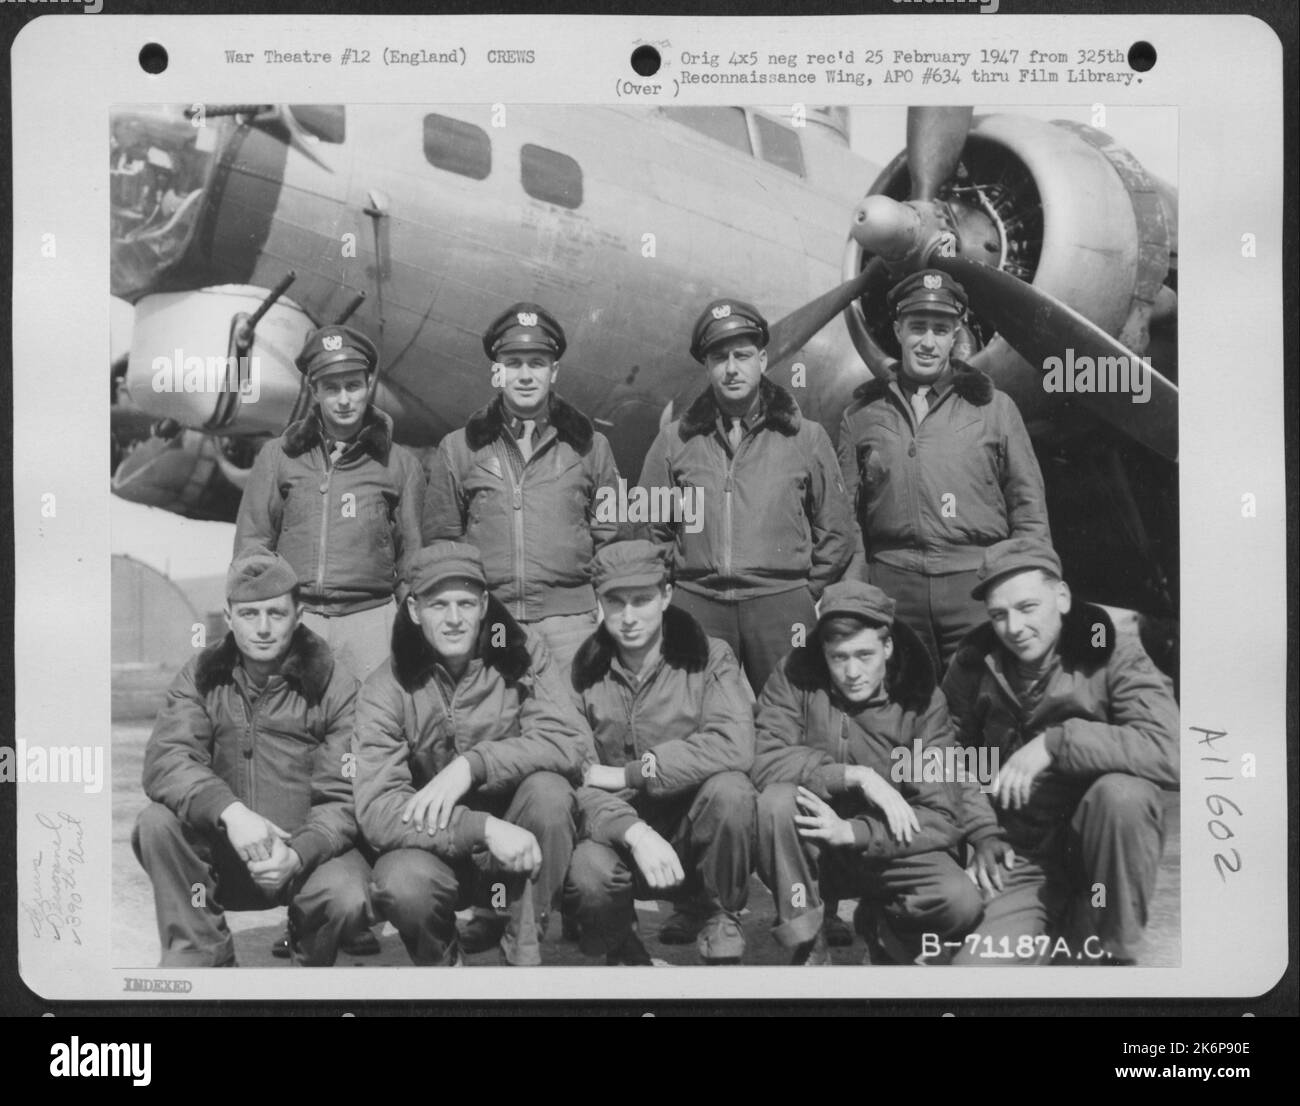 Il 5 aprile 1945 il Lt. Katz e l'equipaggio del Boeing B-17 "Flying Fortress" del 390th Bomb Group posano con il loro aereo presso la loro base in Inghilterra. Foto Stock